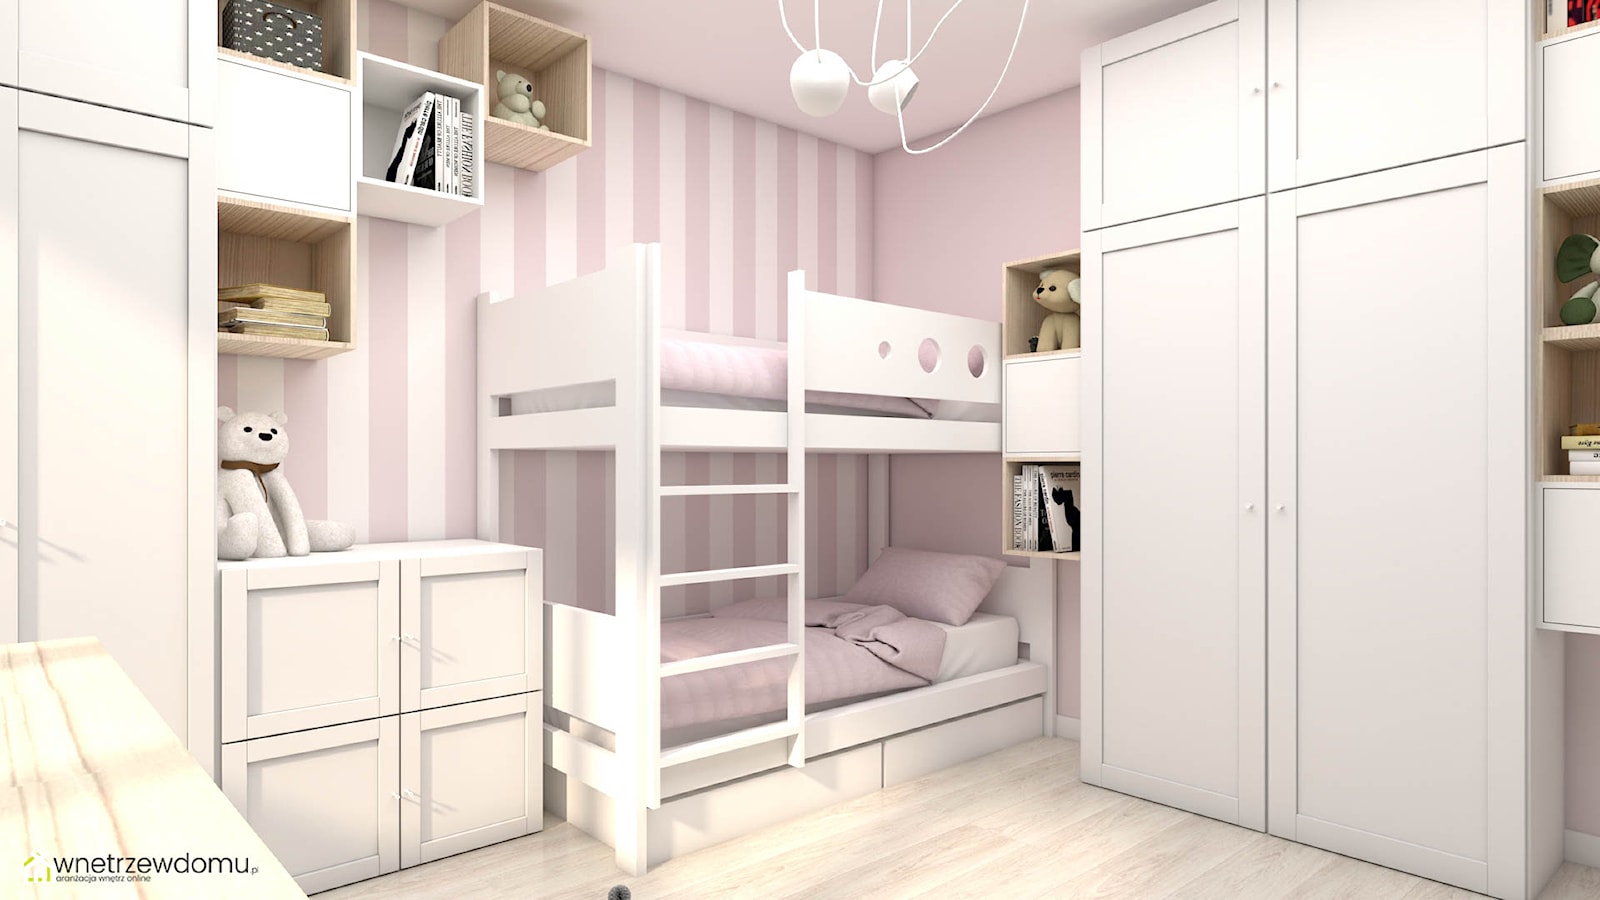 Pokój dla dwóch dziewczynek z piętrowym łóżkiem - zdjęcie od wnetrzewdomu - Homebook